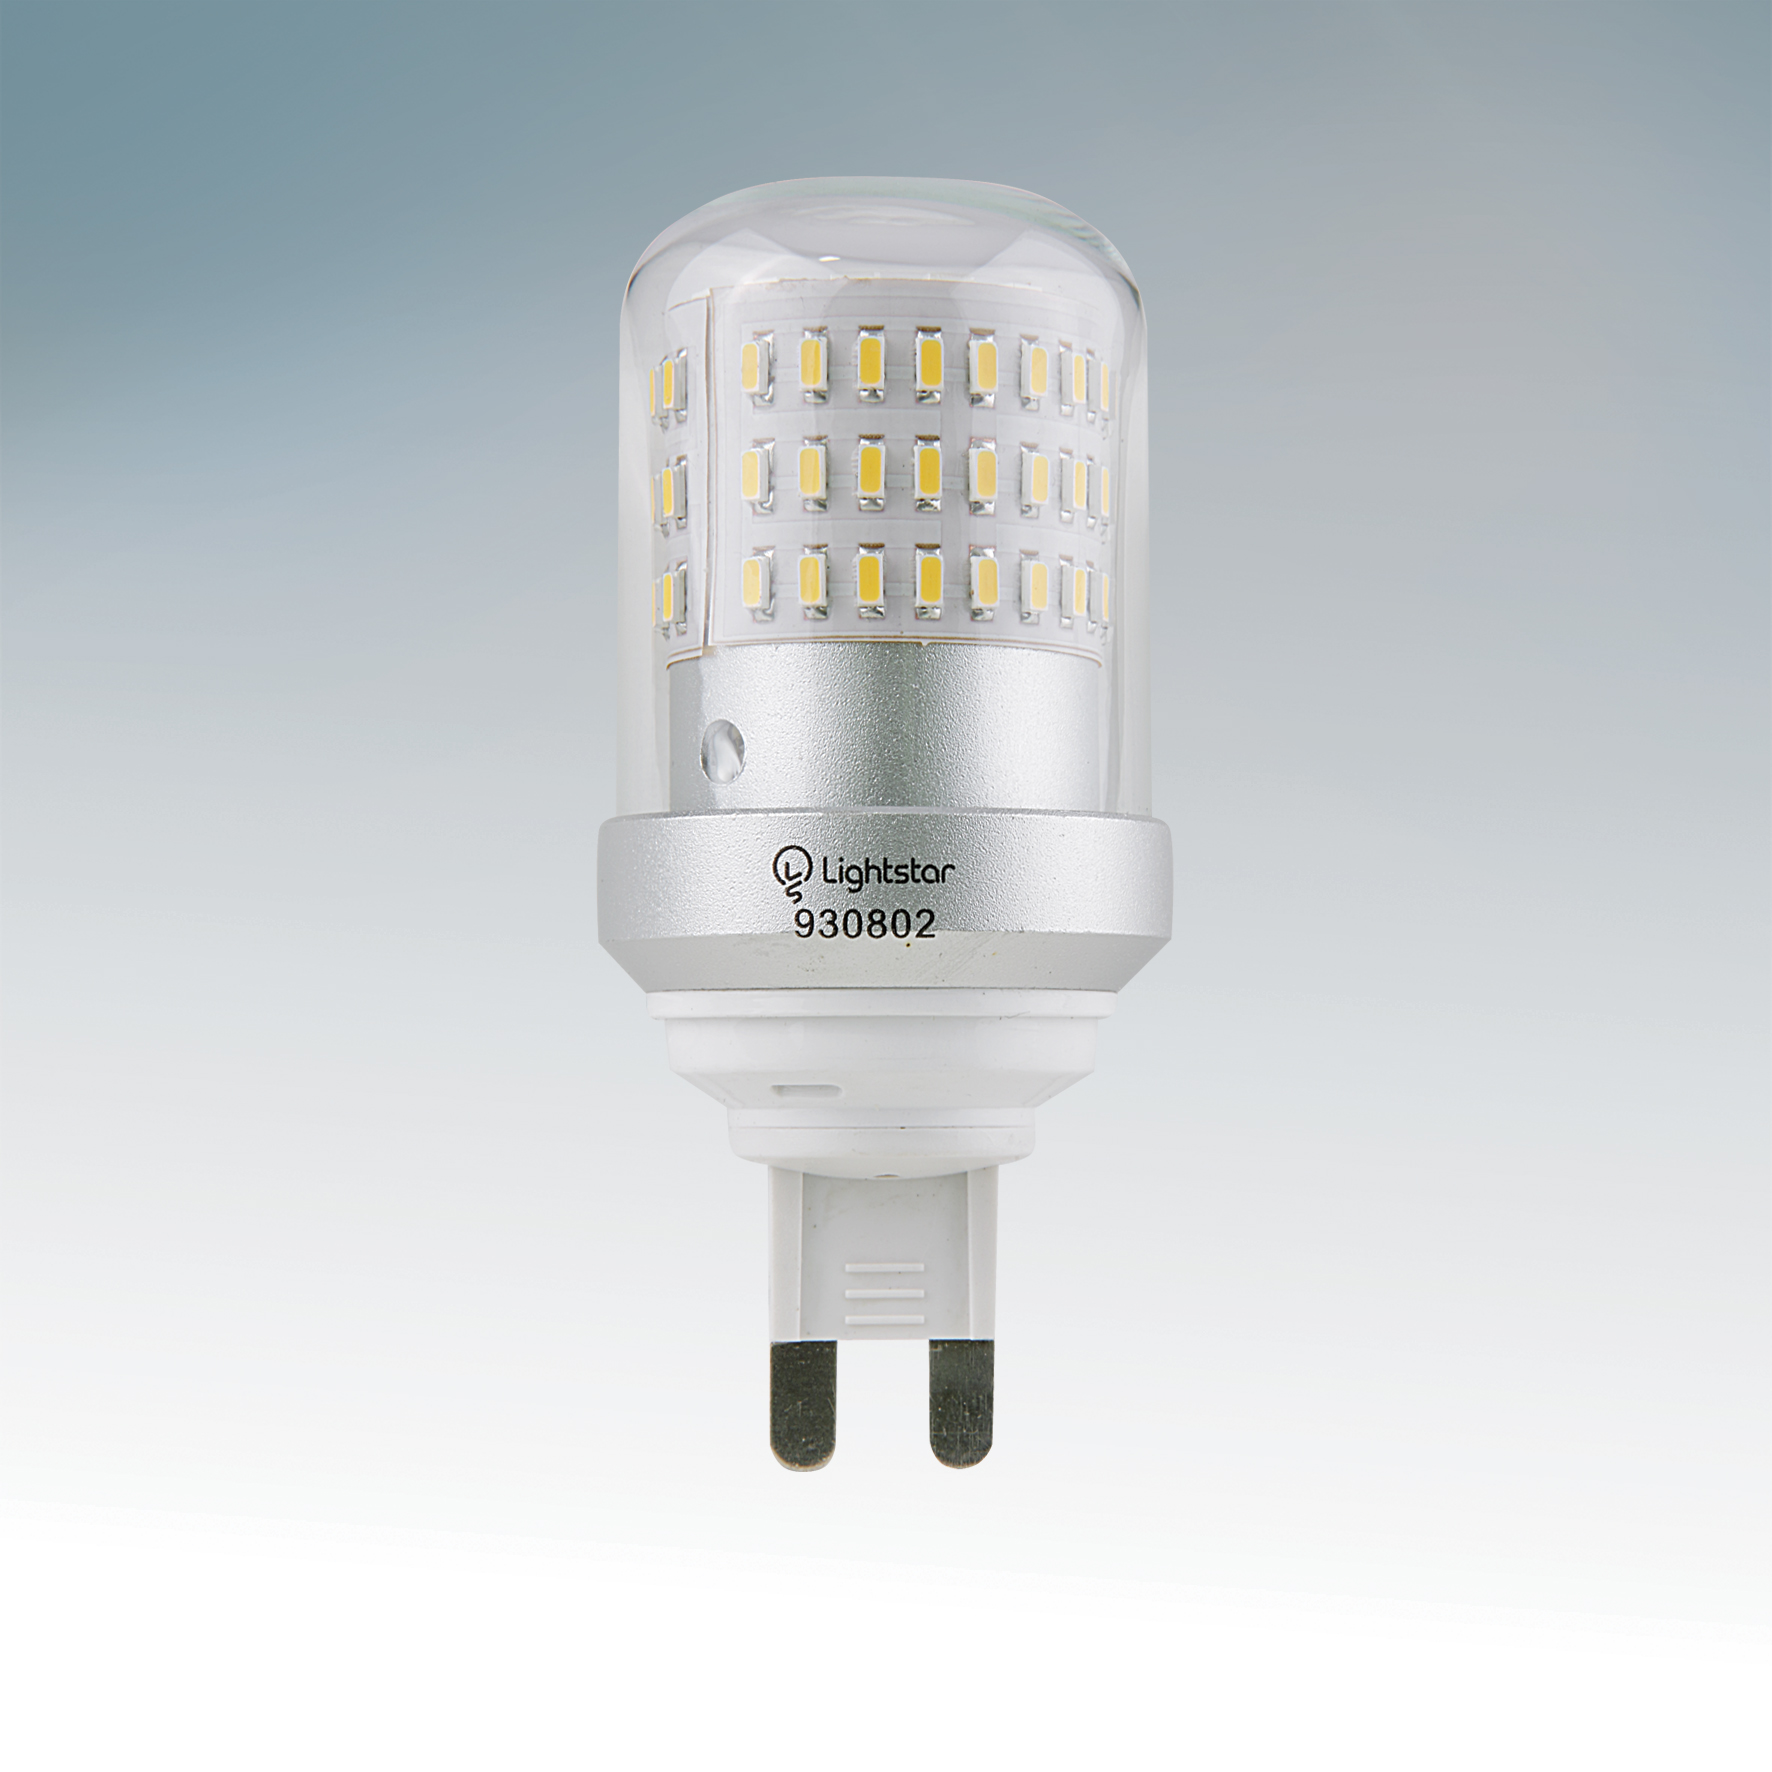 Лампа Lightstar LED 930802